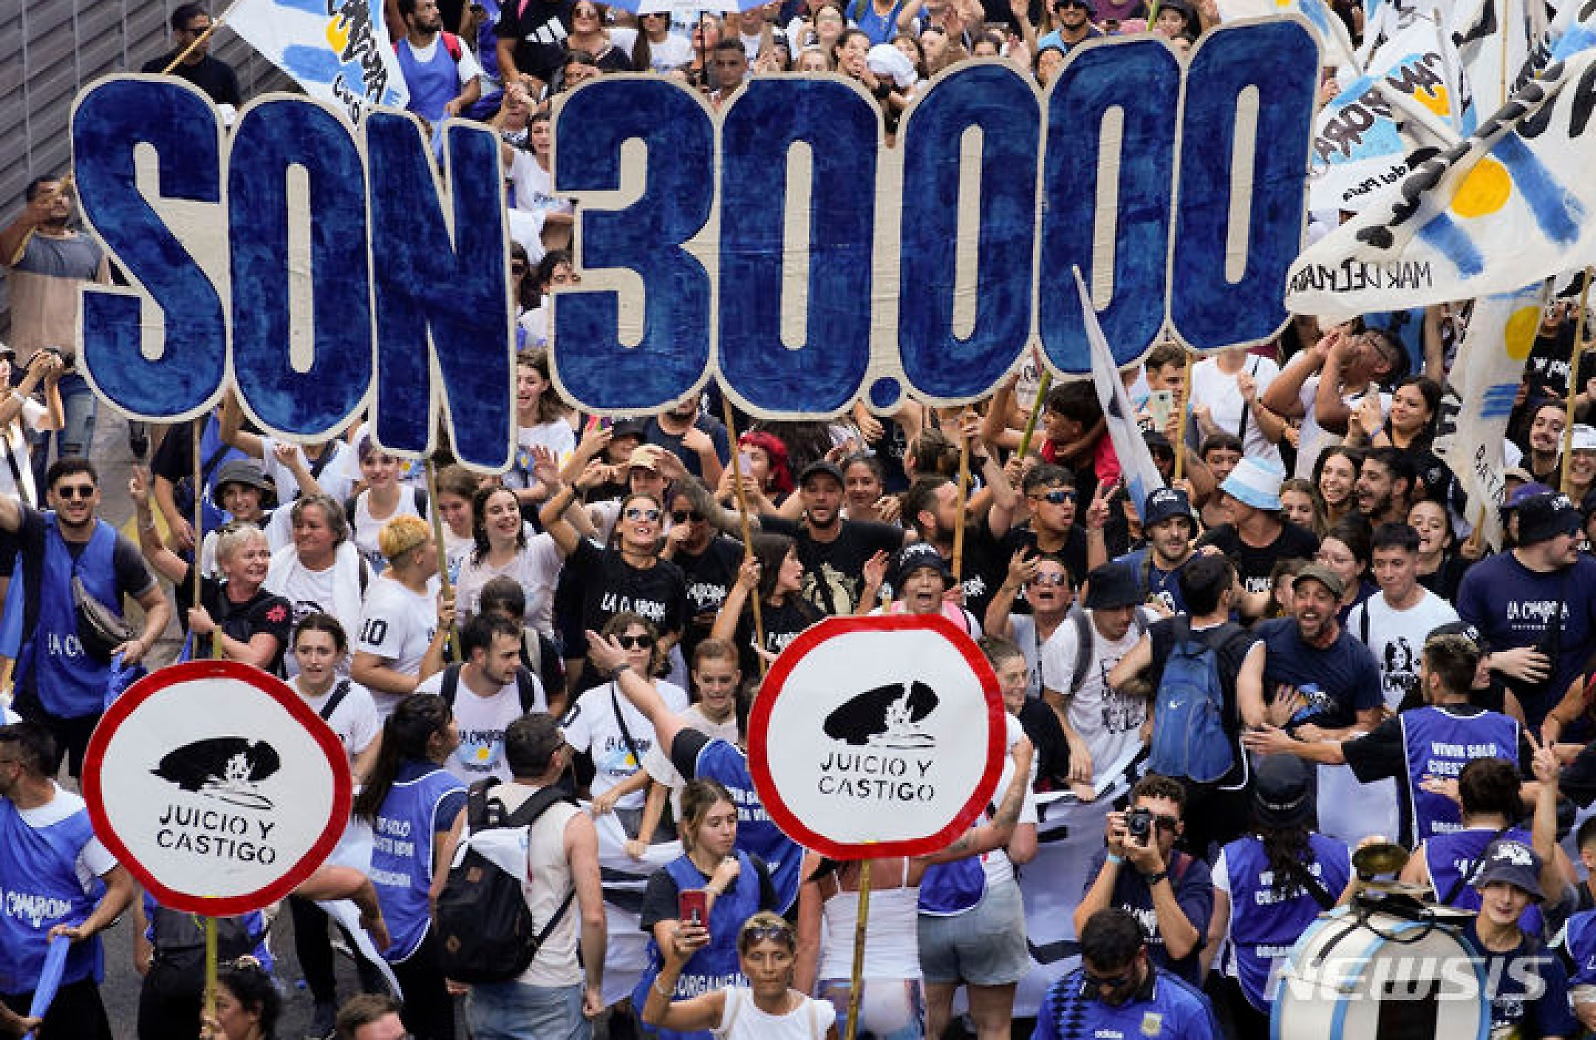 "아르헨티나 군사정권 희생자 3만 명"